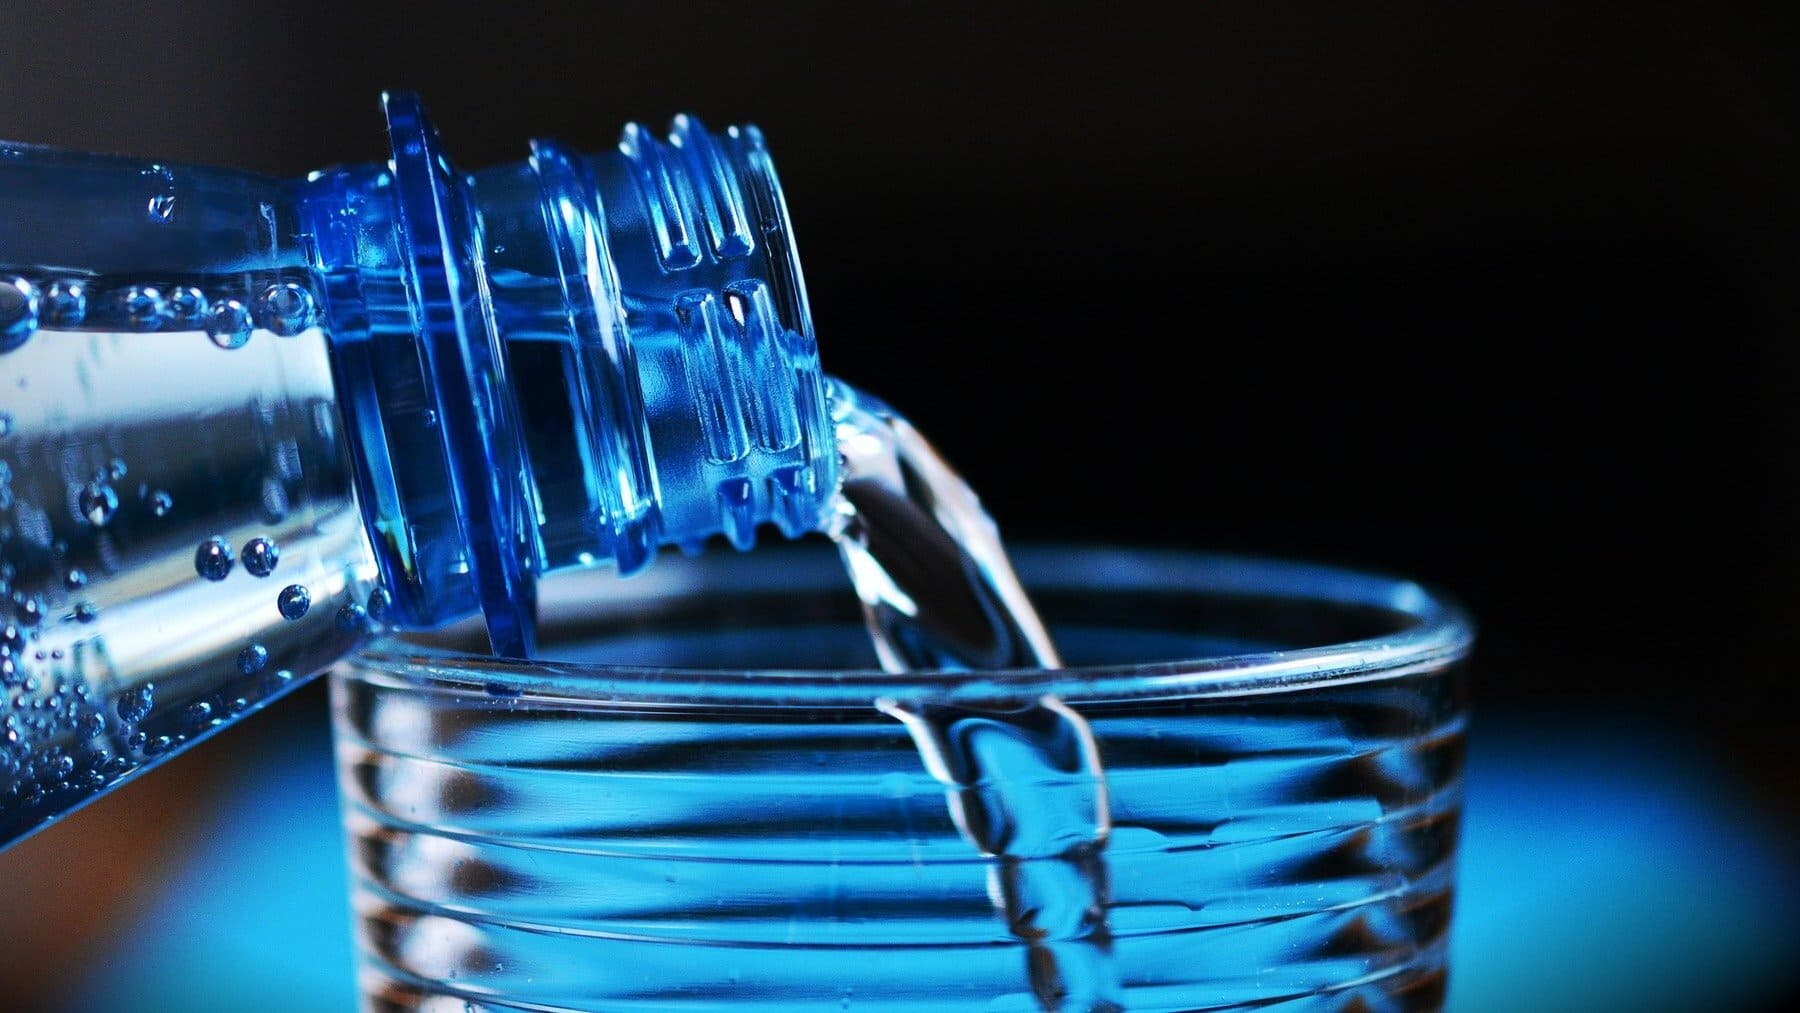 11 botellas de agua reutilizables que te harán olvidar el plástico